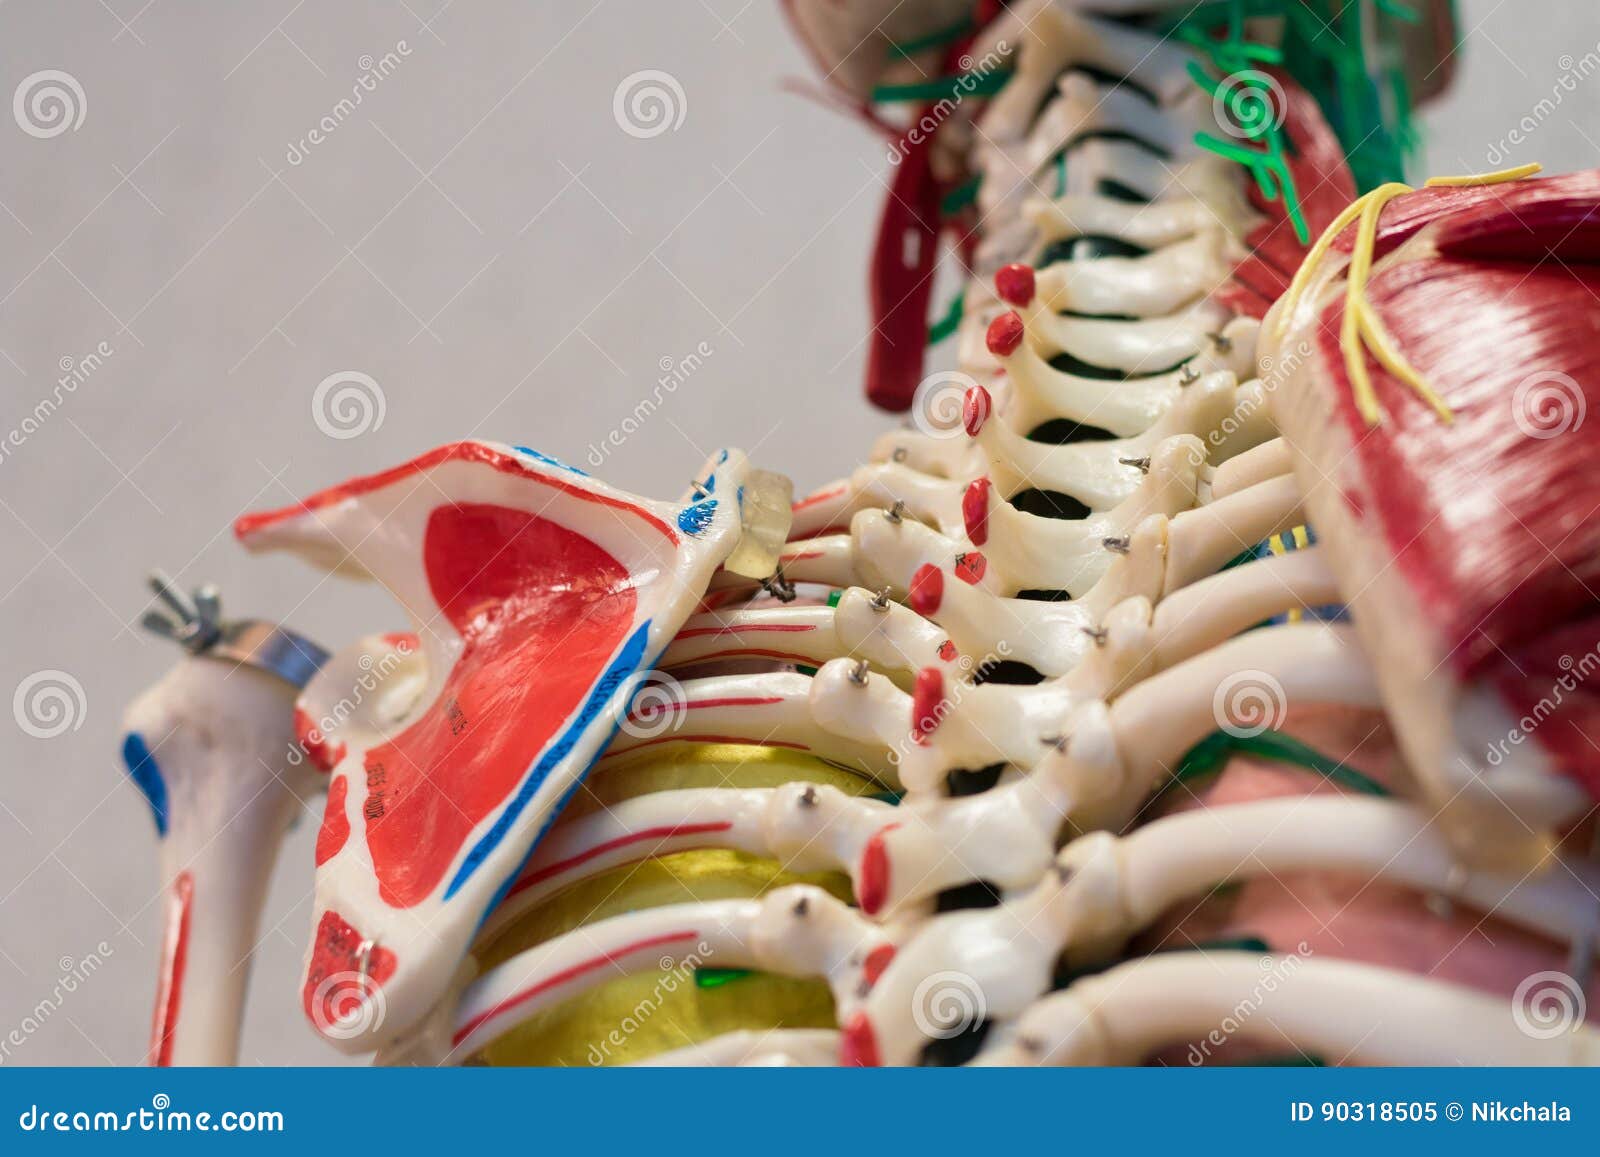 Schéma d'anatomie du corps humain en mouvement on Craiyon